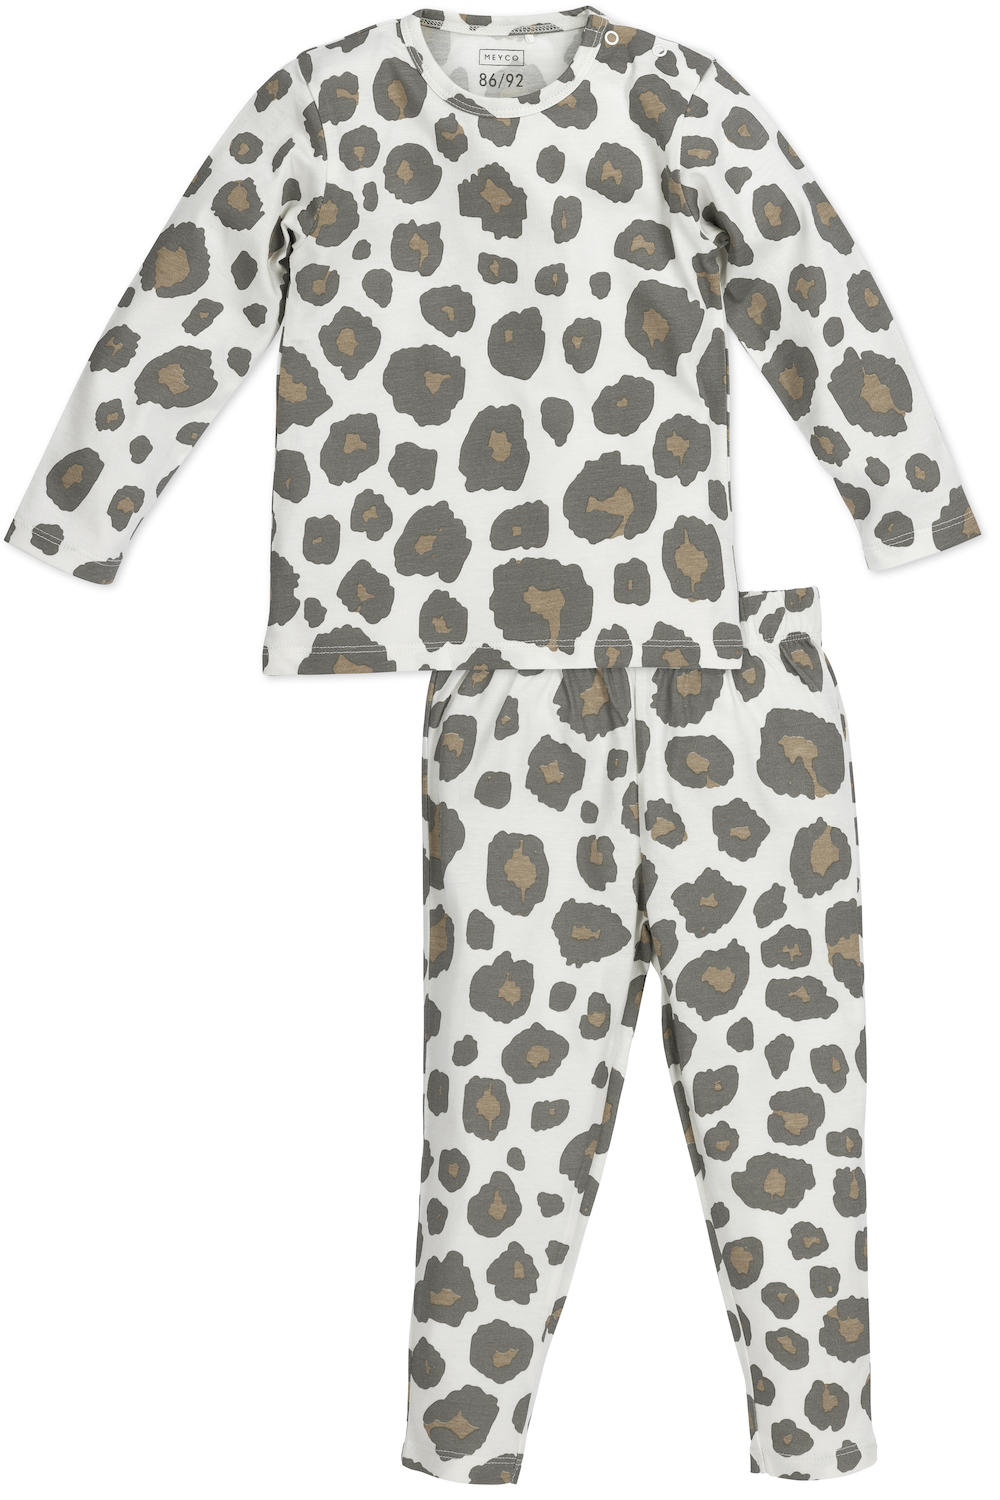 Pyjamas Panther - neutral - 86/92